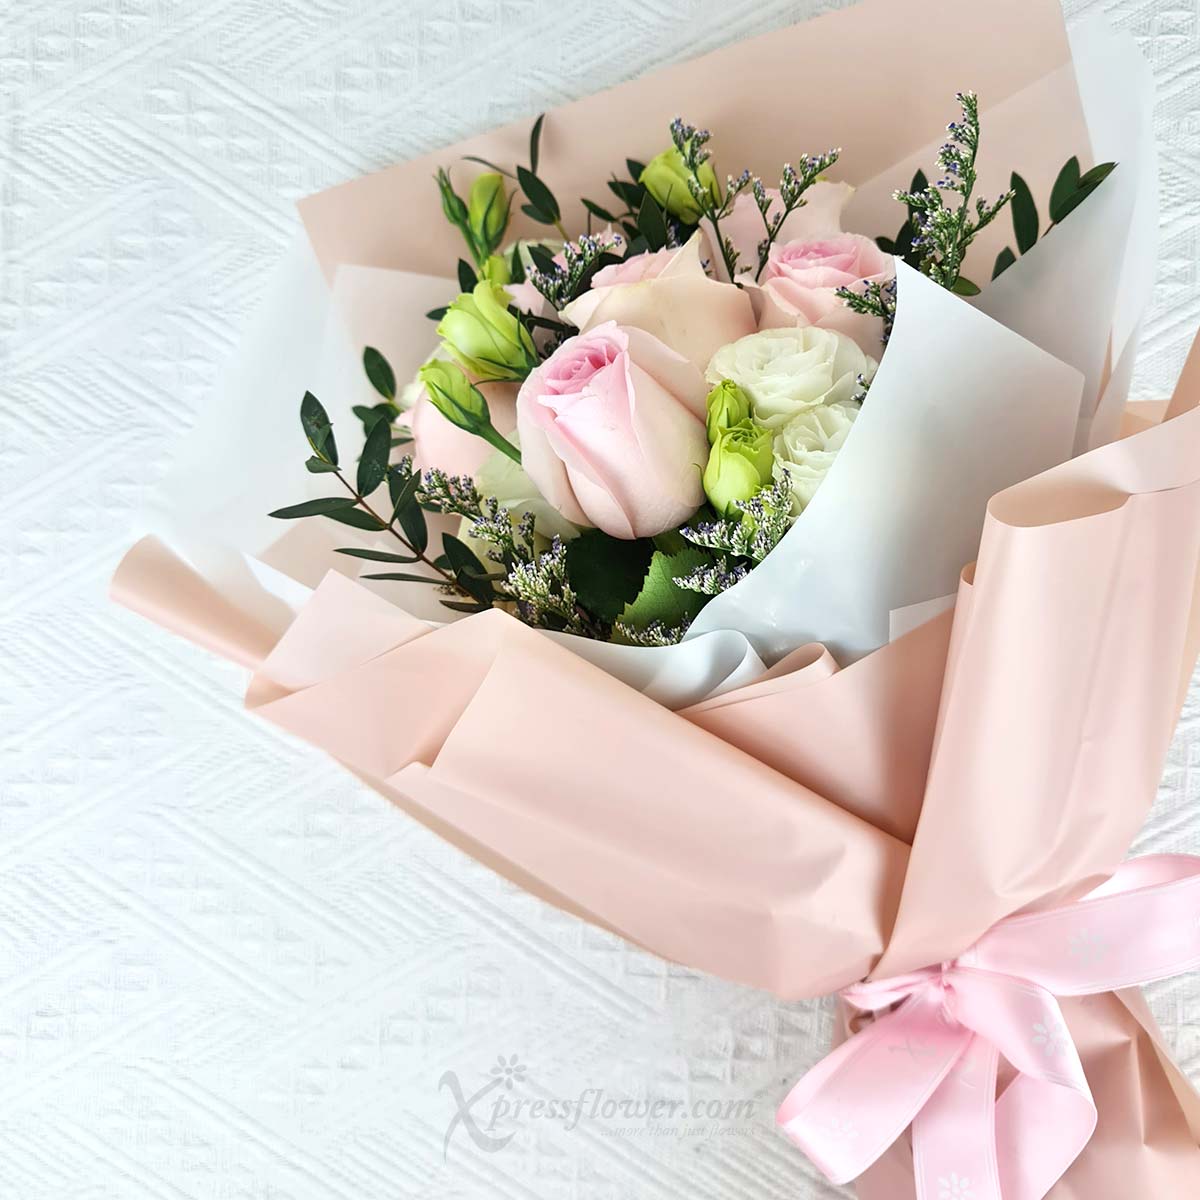 VDBQ2402_Sweet Petals 6 Sweet Pink Roses_1C